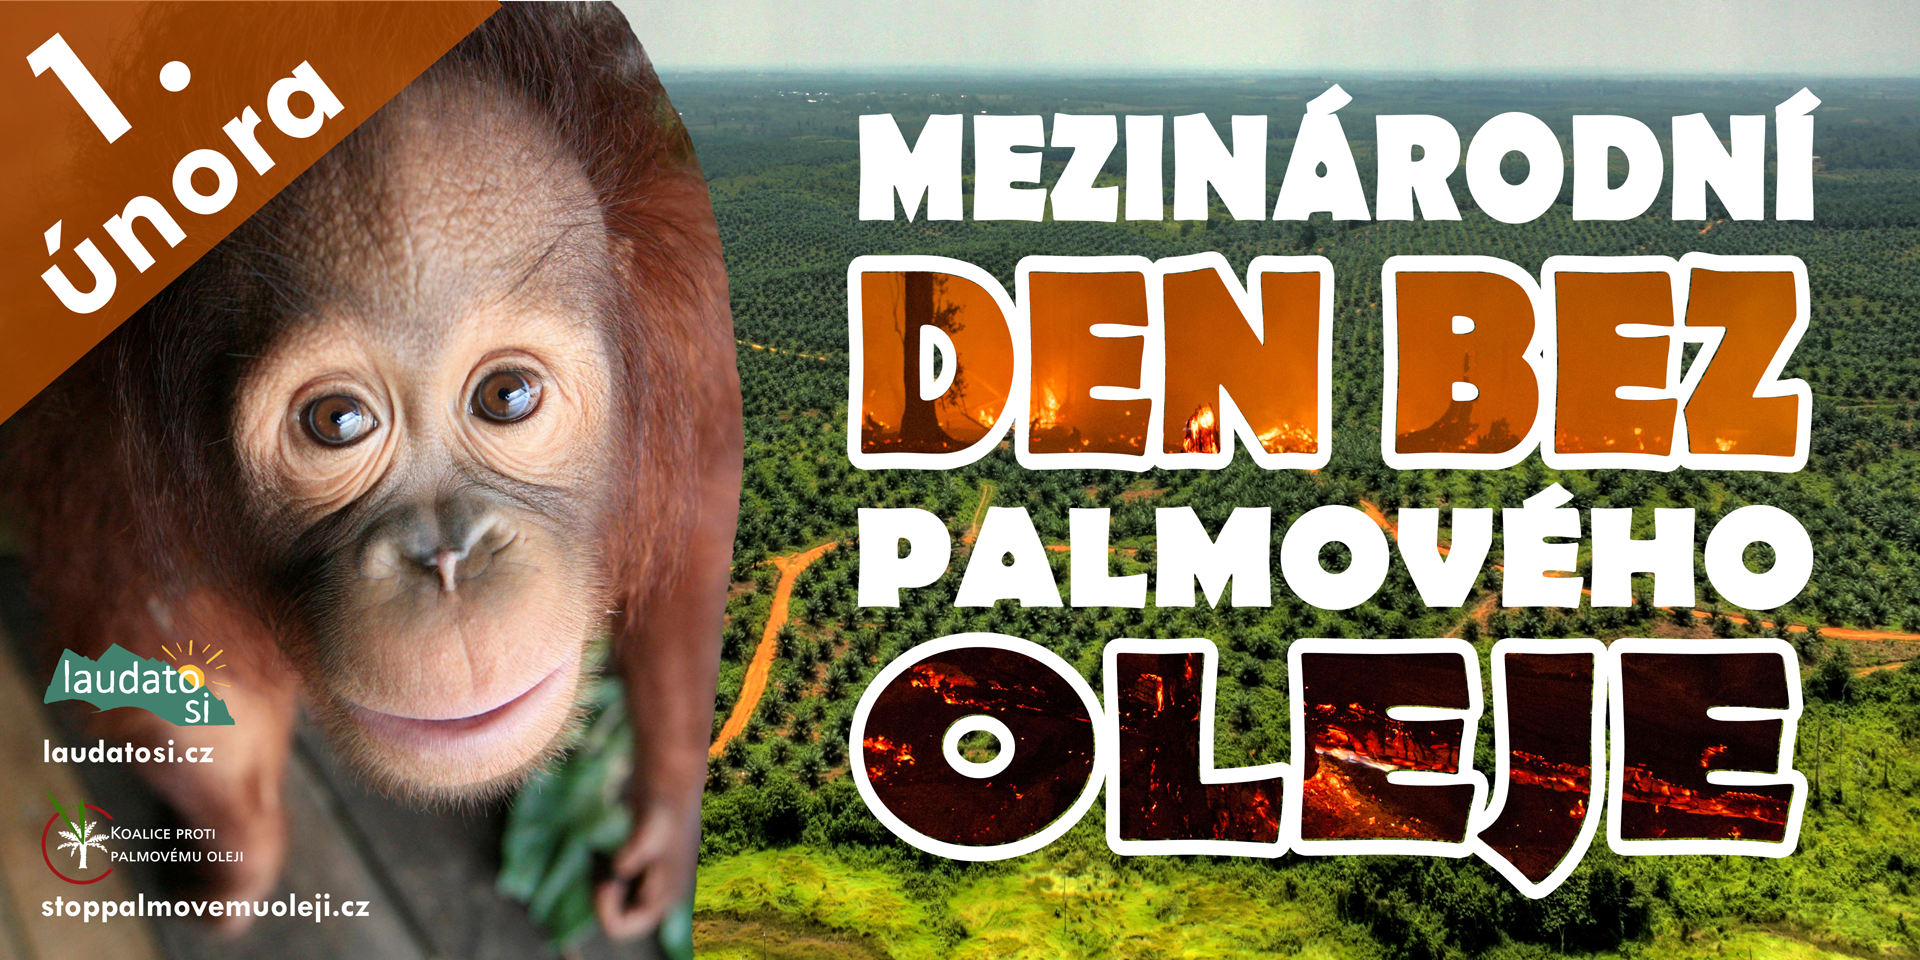 1. únor - Mezinárodní den bez palmového oleje